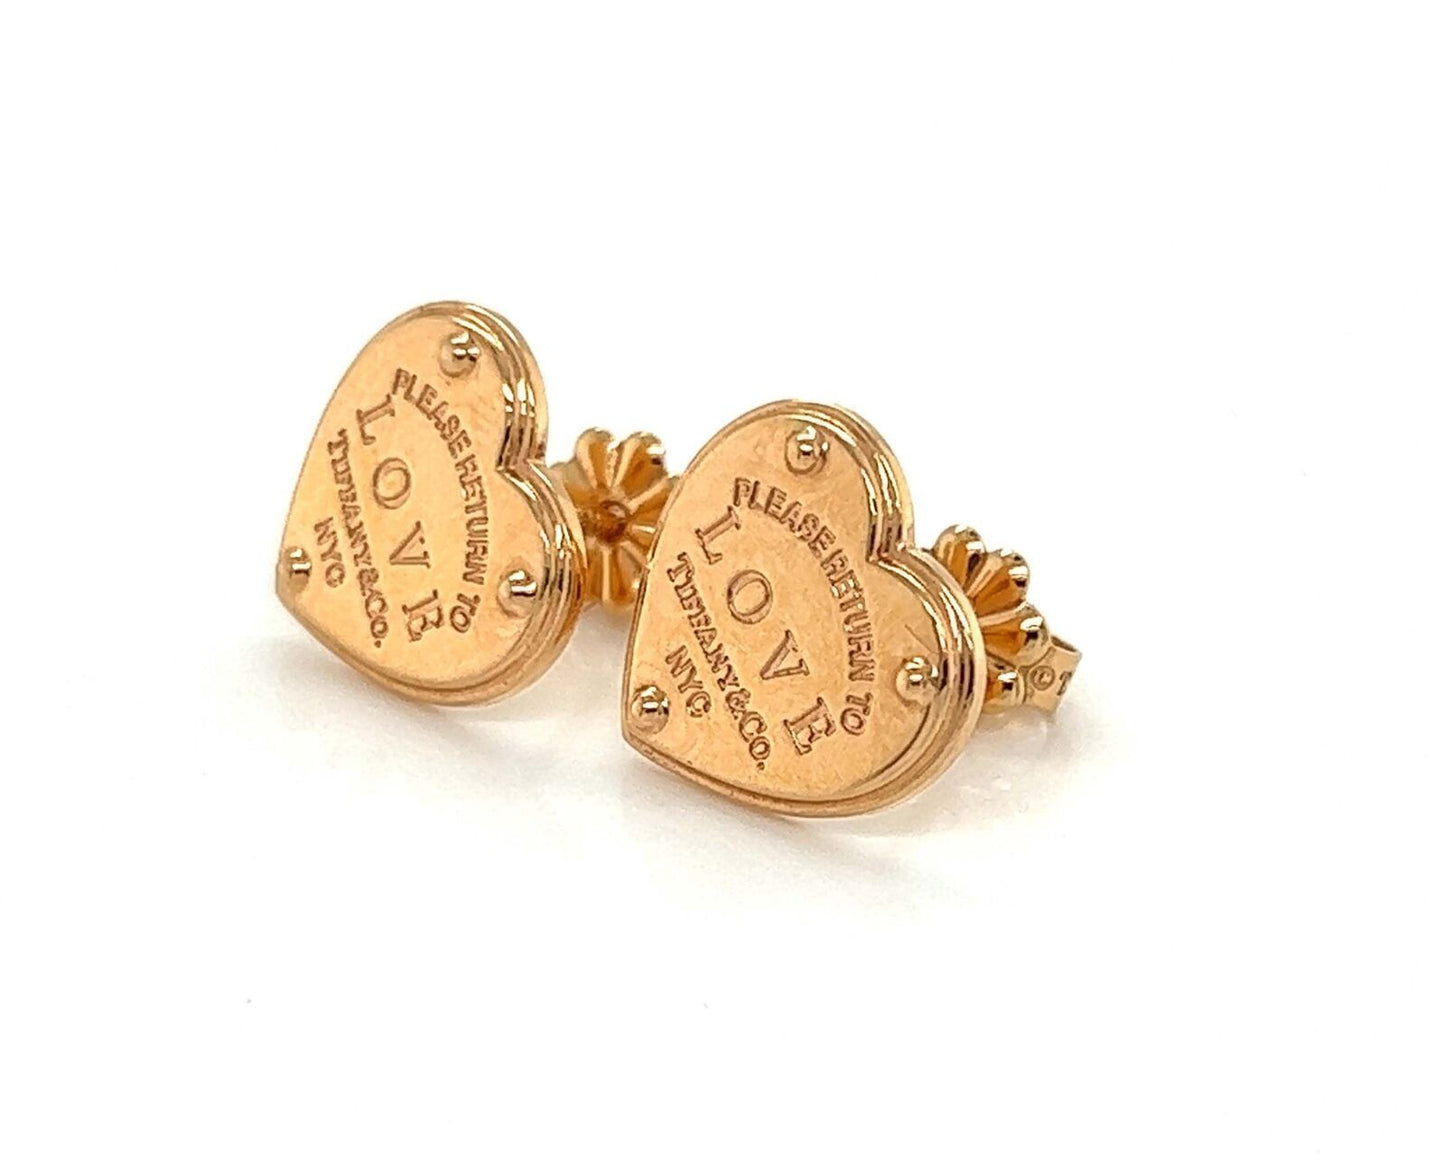 Tiffany & Co. Please Return 18k Rose Gold LOVE Heart Stud Earrings